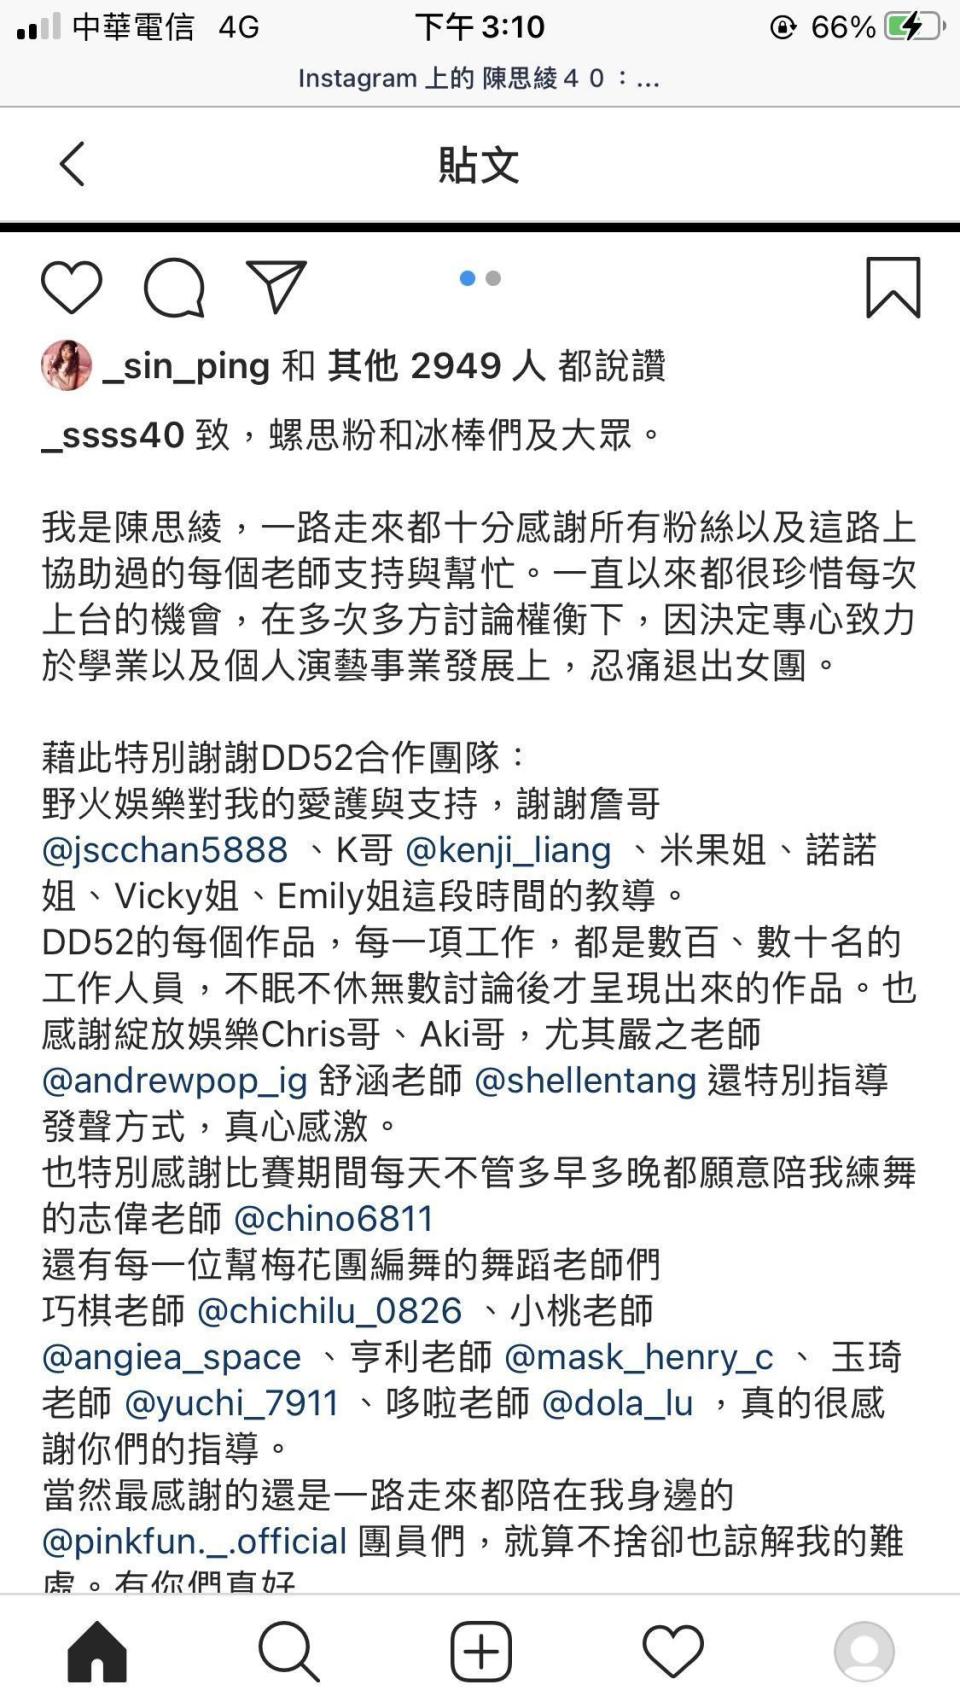 陳思凌在IG上發表退團文，共感謝一路以來所有幫助過的人。（翻攝自陳思凌IG）